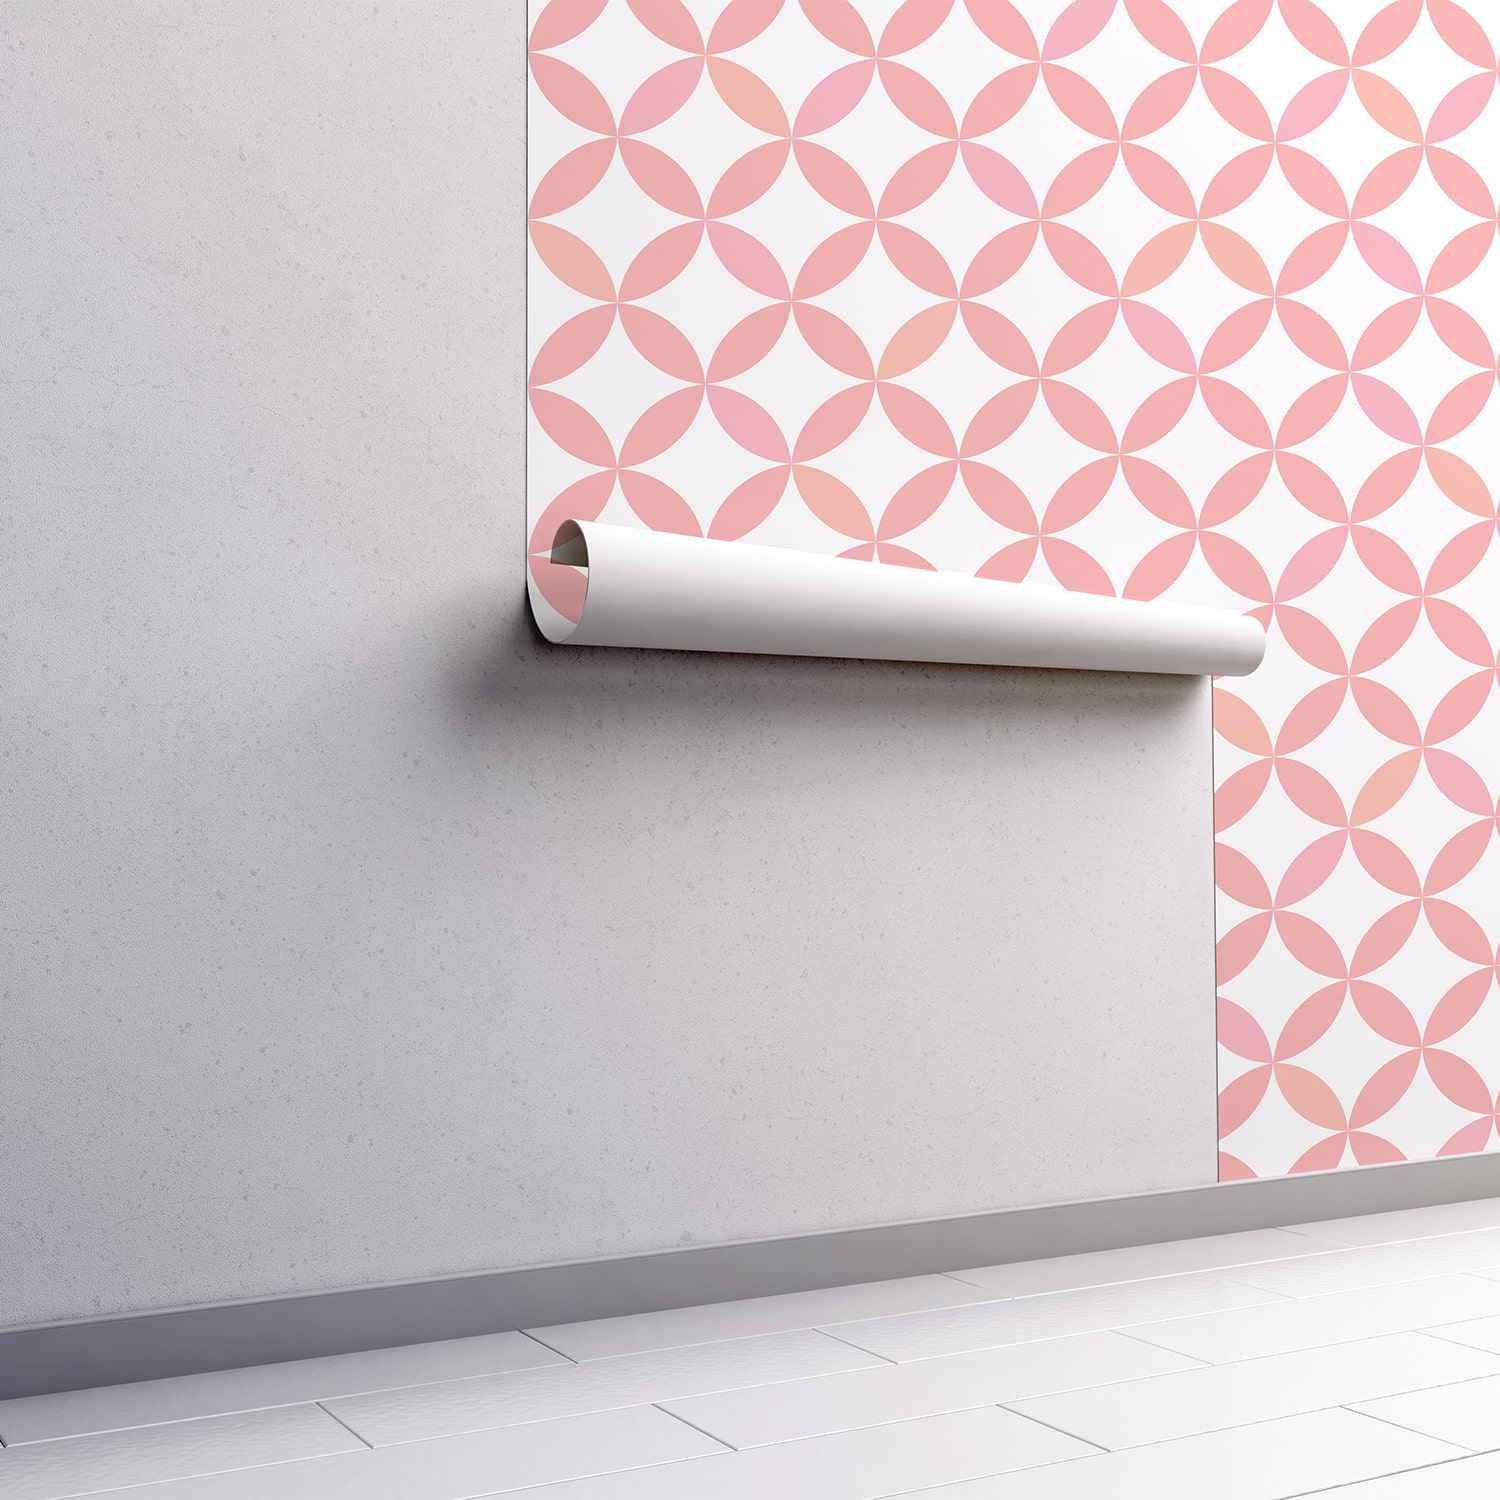 PP54-mur.rouleau-papier-peint-adhesif-decoratif-revetement-vinyle-motifs-carreaux-de-ciment-Louison-renovation-meuble-mur-min